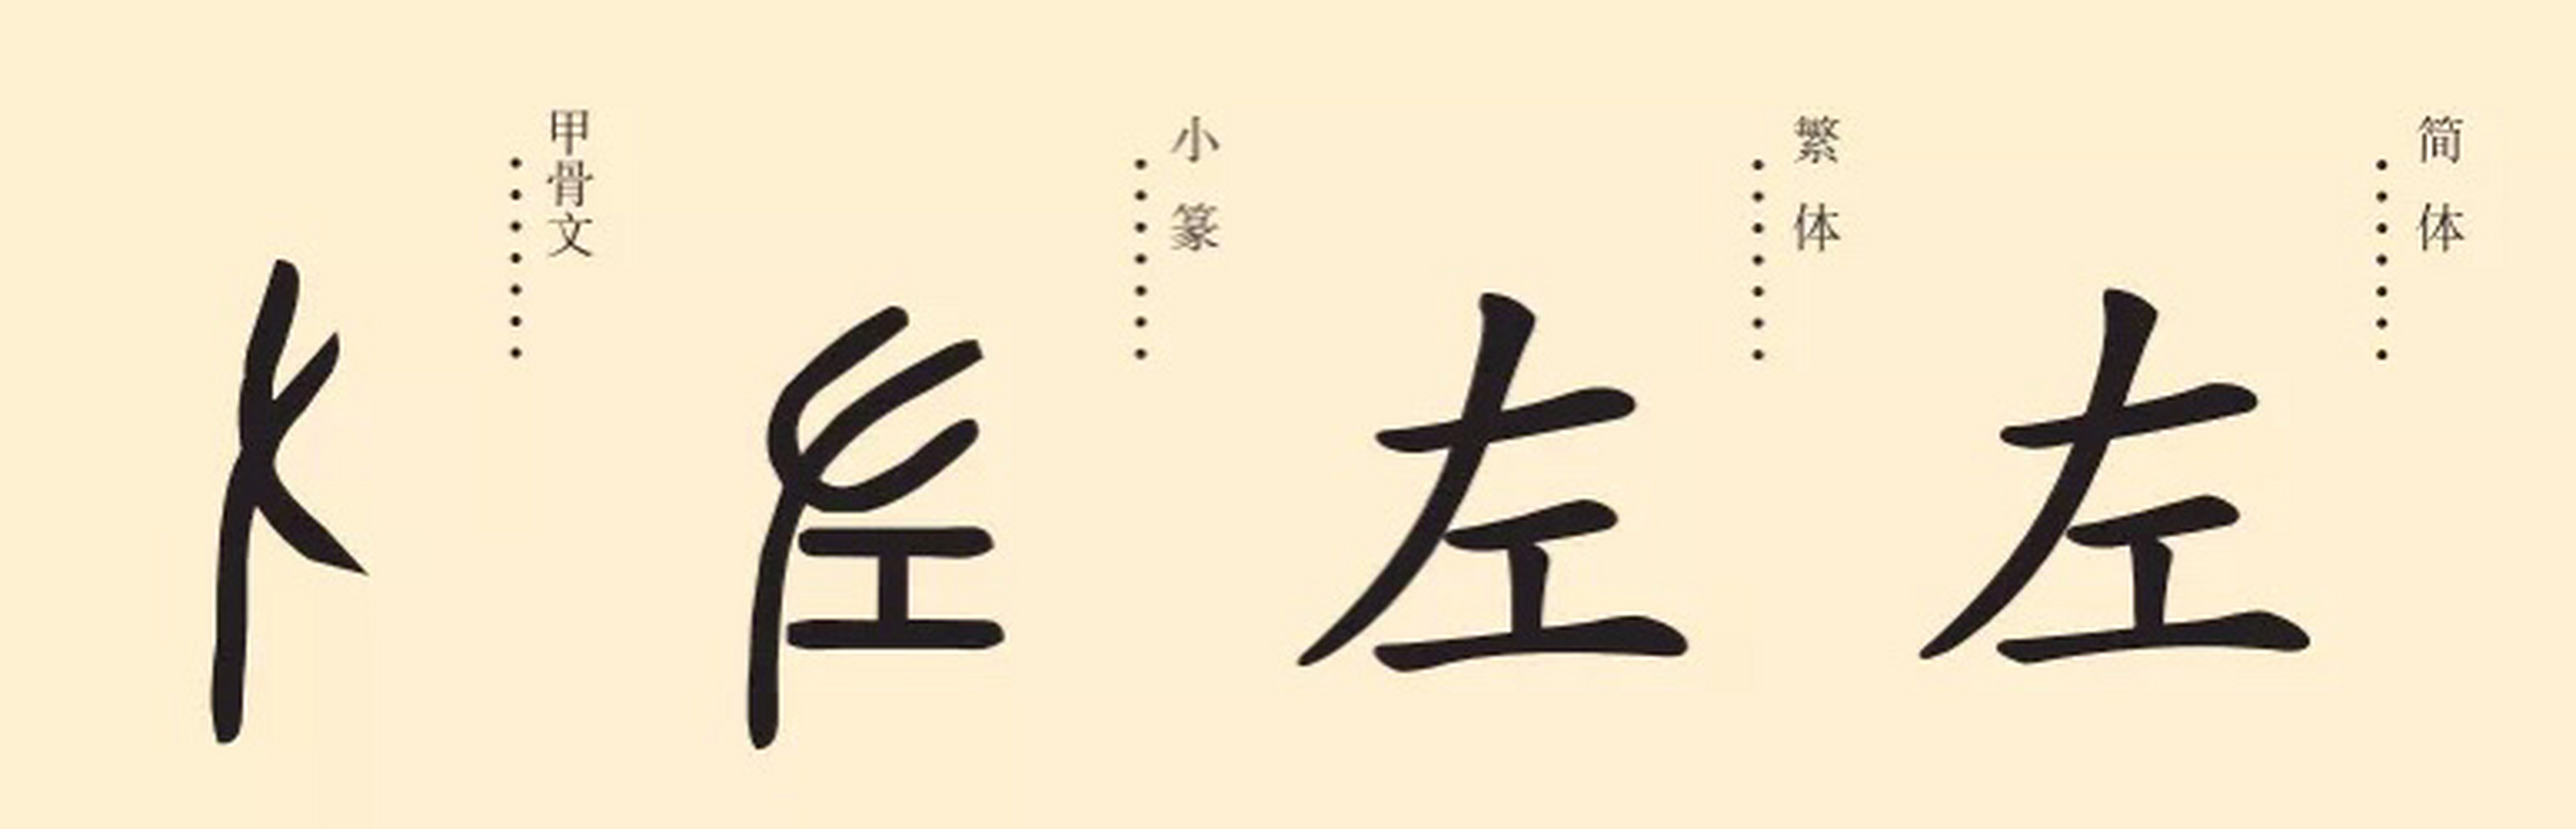 汉字小课堂#发现美好时光 甲骨文的"左"字,像一只左手,上部为手指